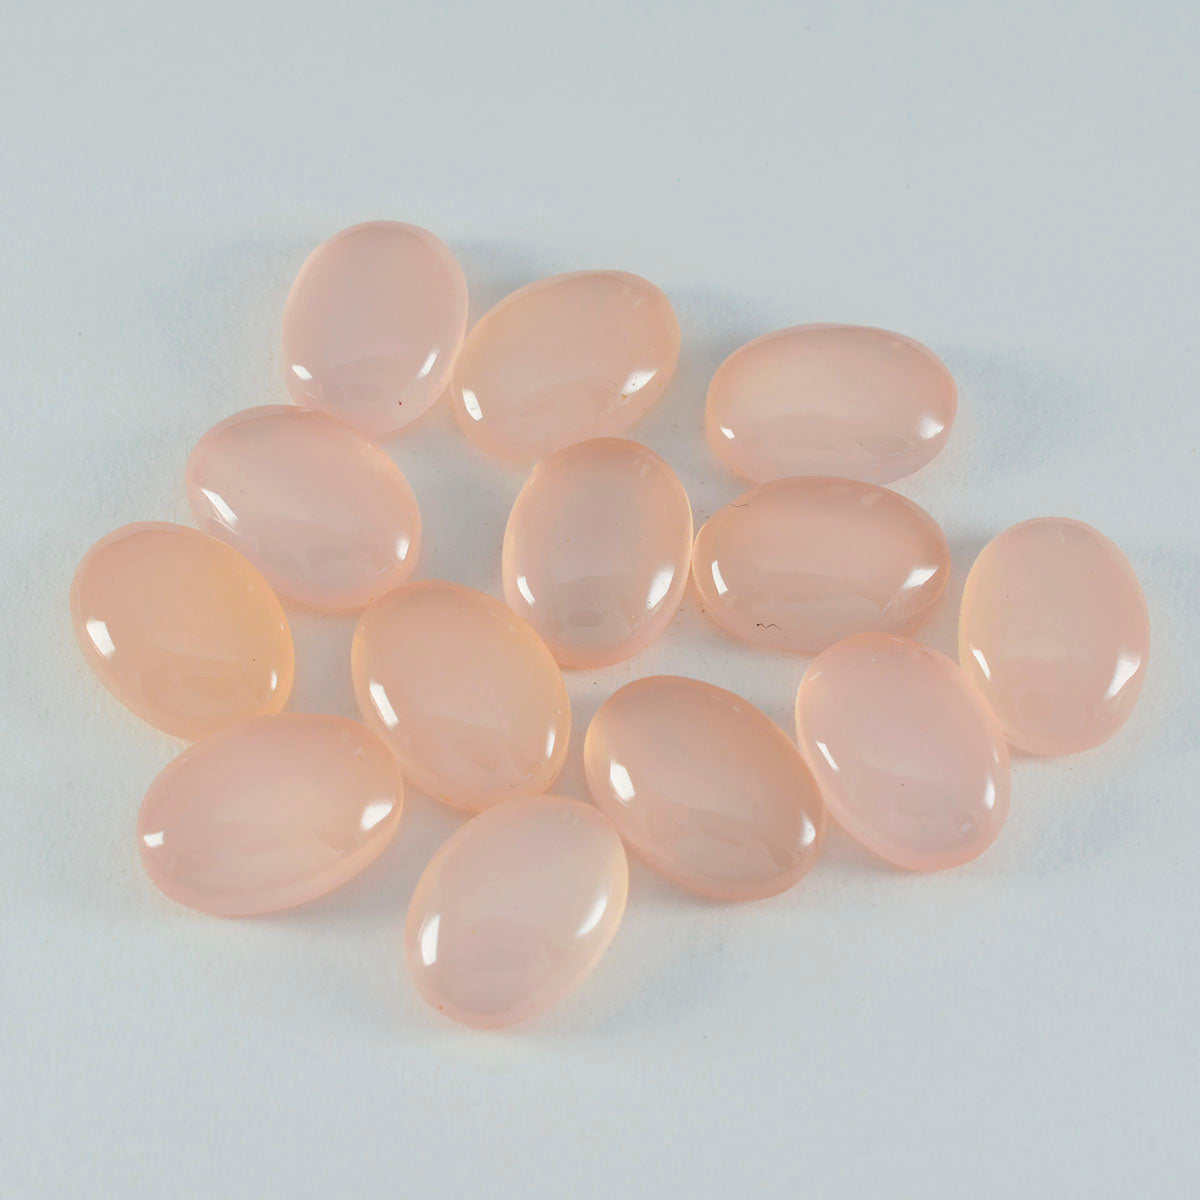 riyogems 1 шт. кабошон из розового кварца 8x10 мм овальной формы, отличное качество, свободный камень